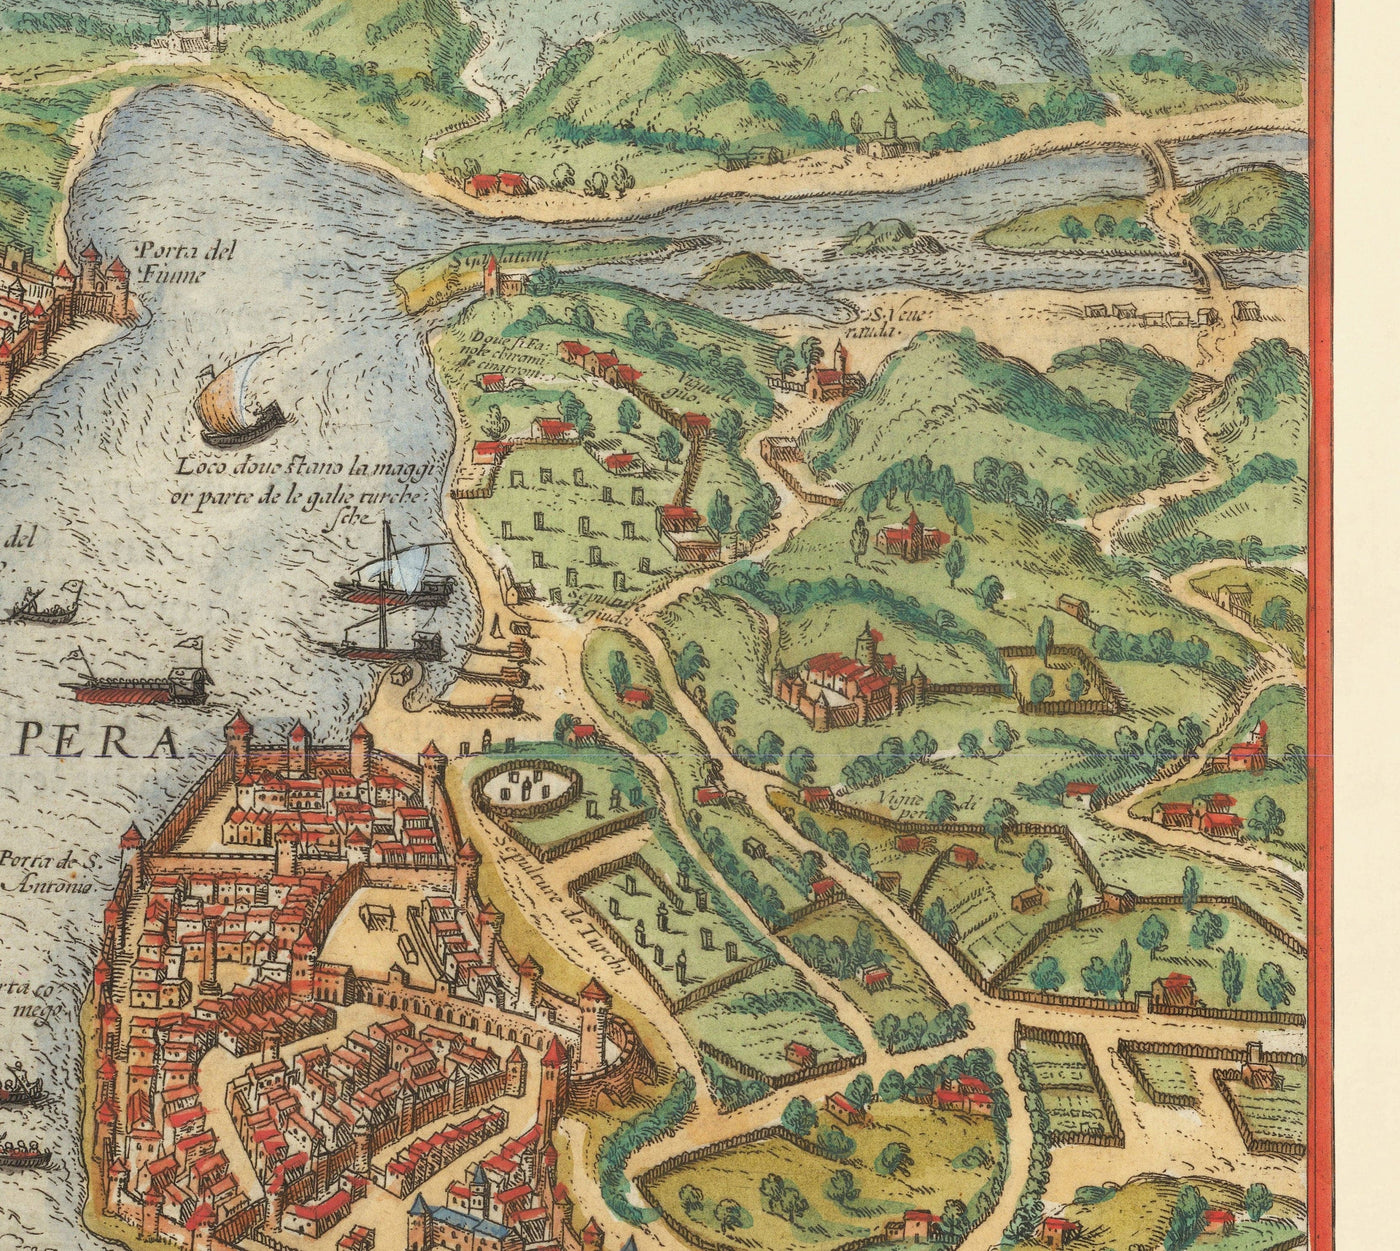 Alte Karte von Istanbul, Constantinople 1572 von Georg Braun - Byzantium, Bosporus, Goldenes Horn, Topkapi-Palast